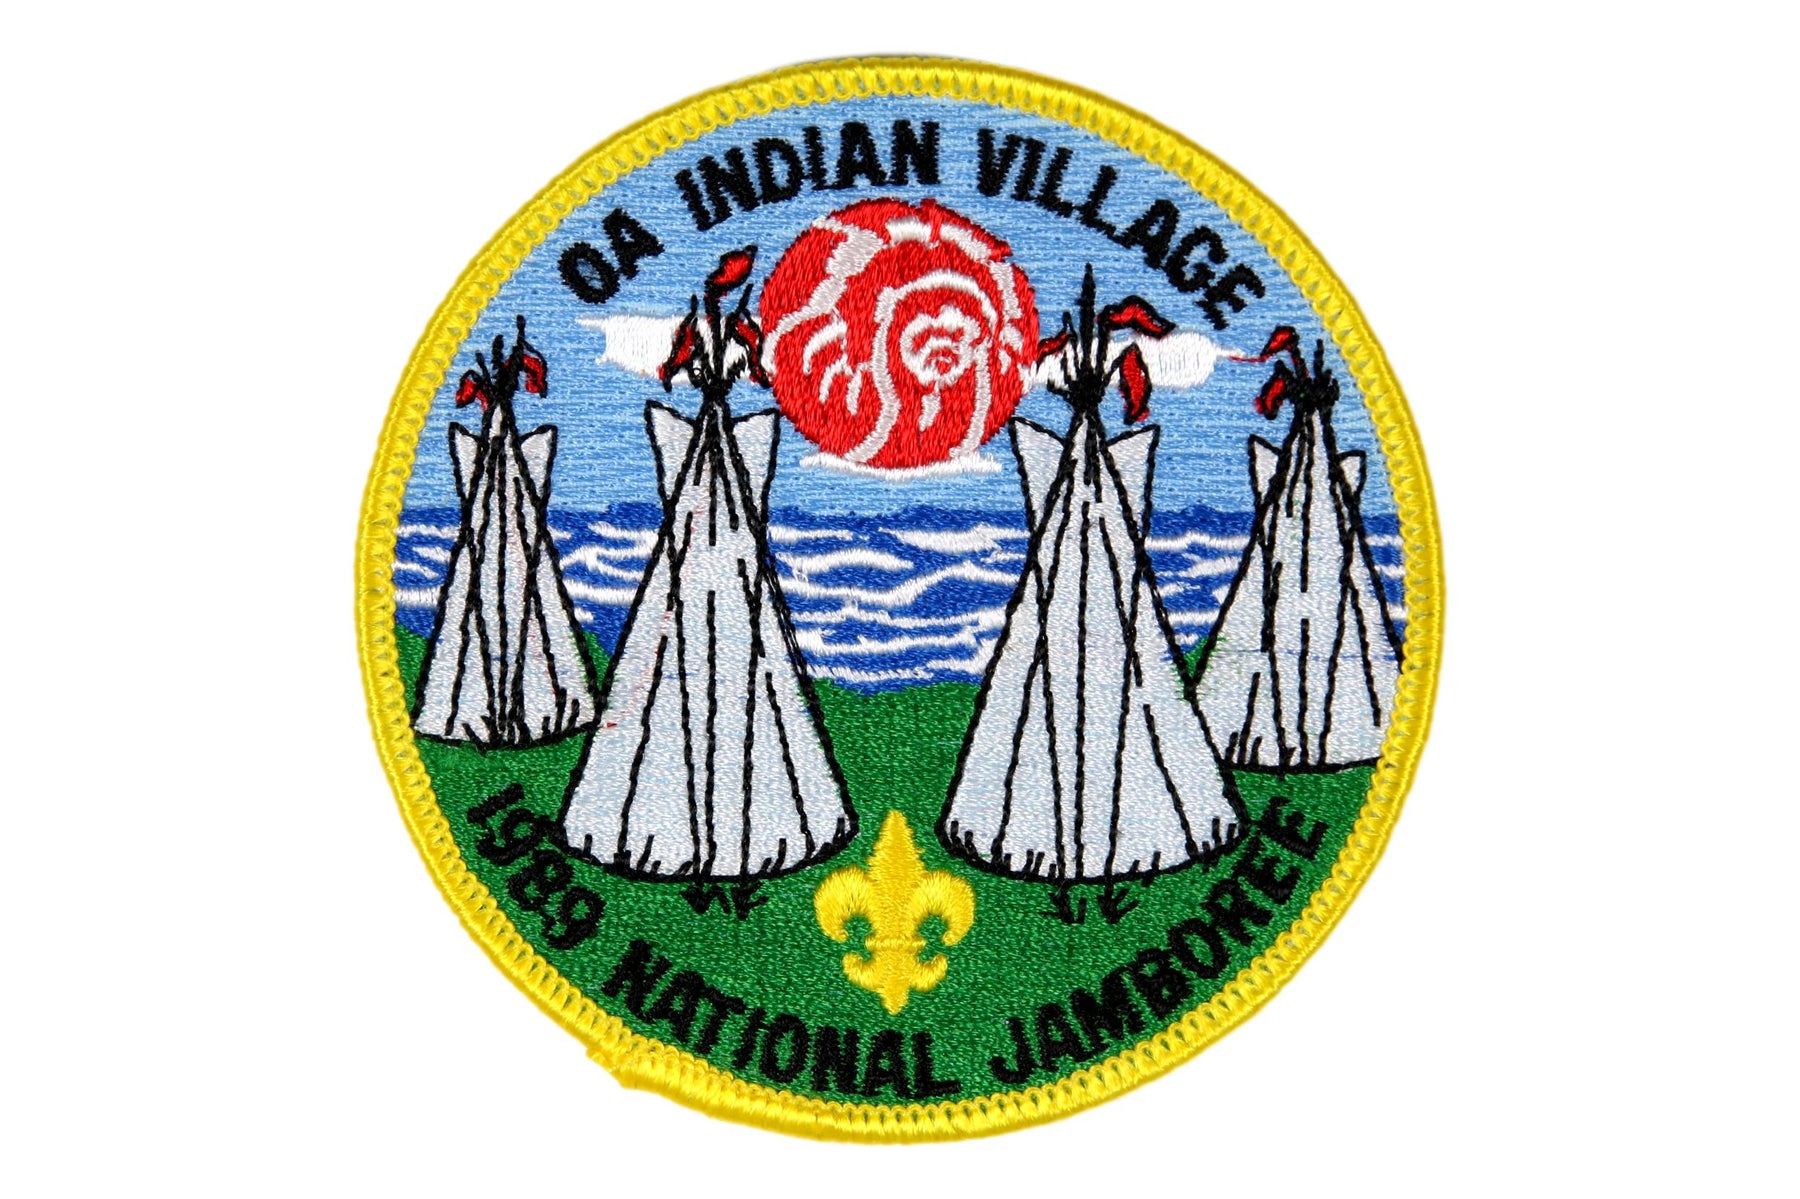 1989 NJ OA Indian Village Patch